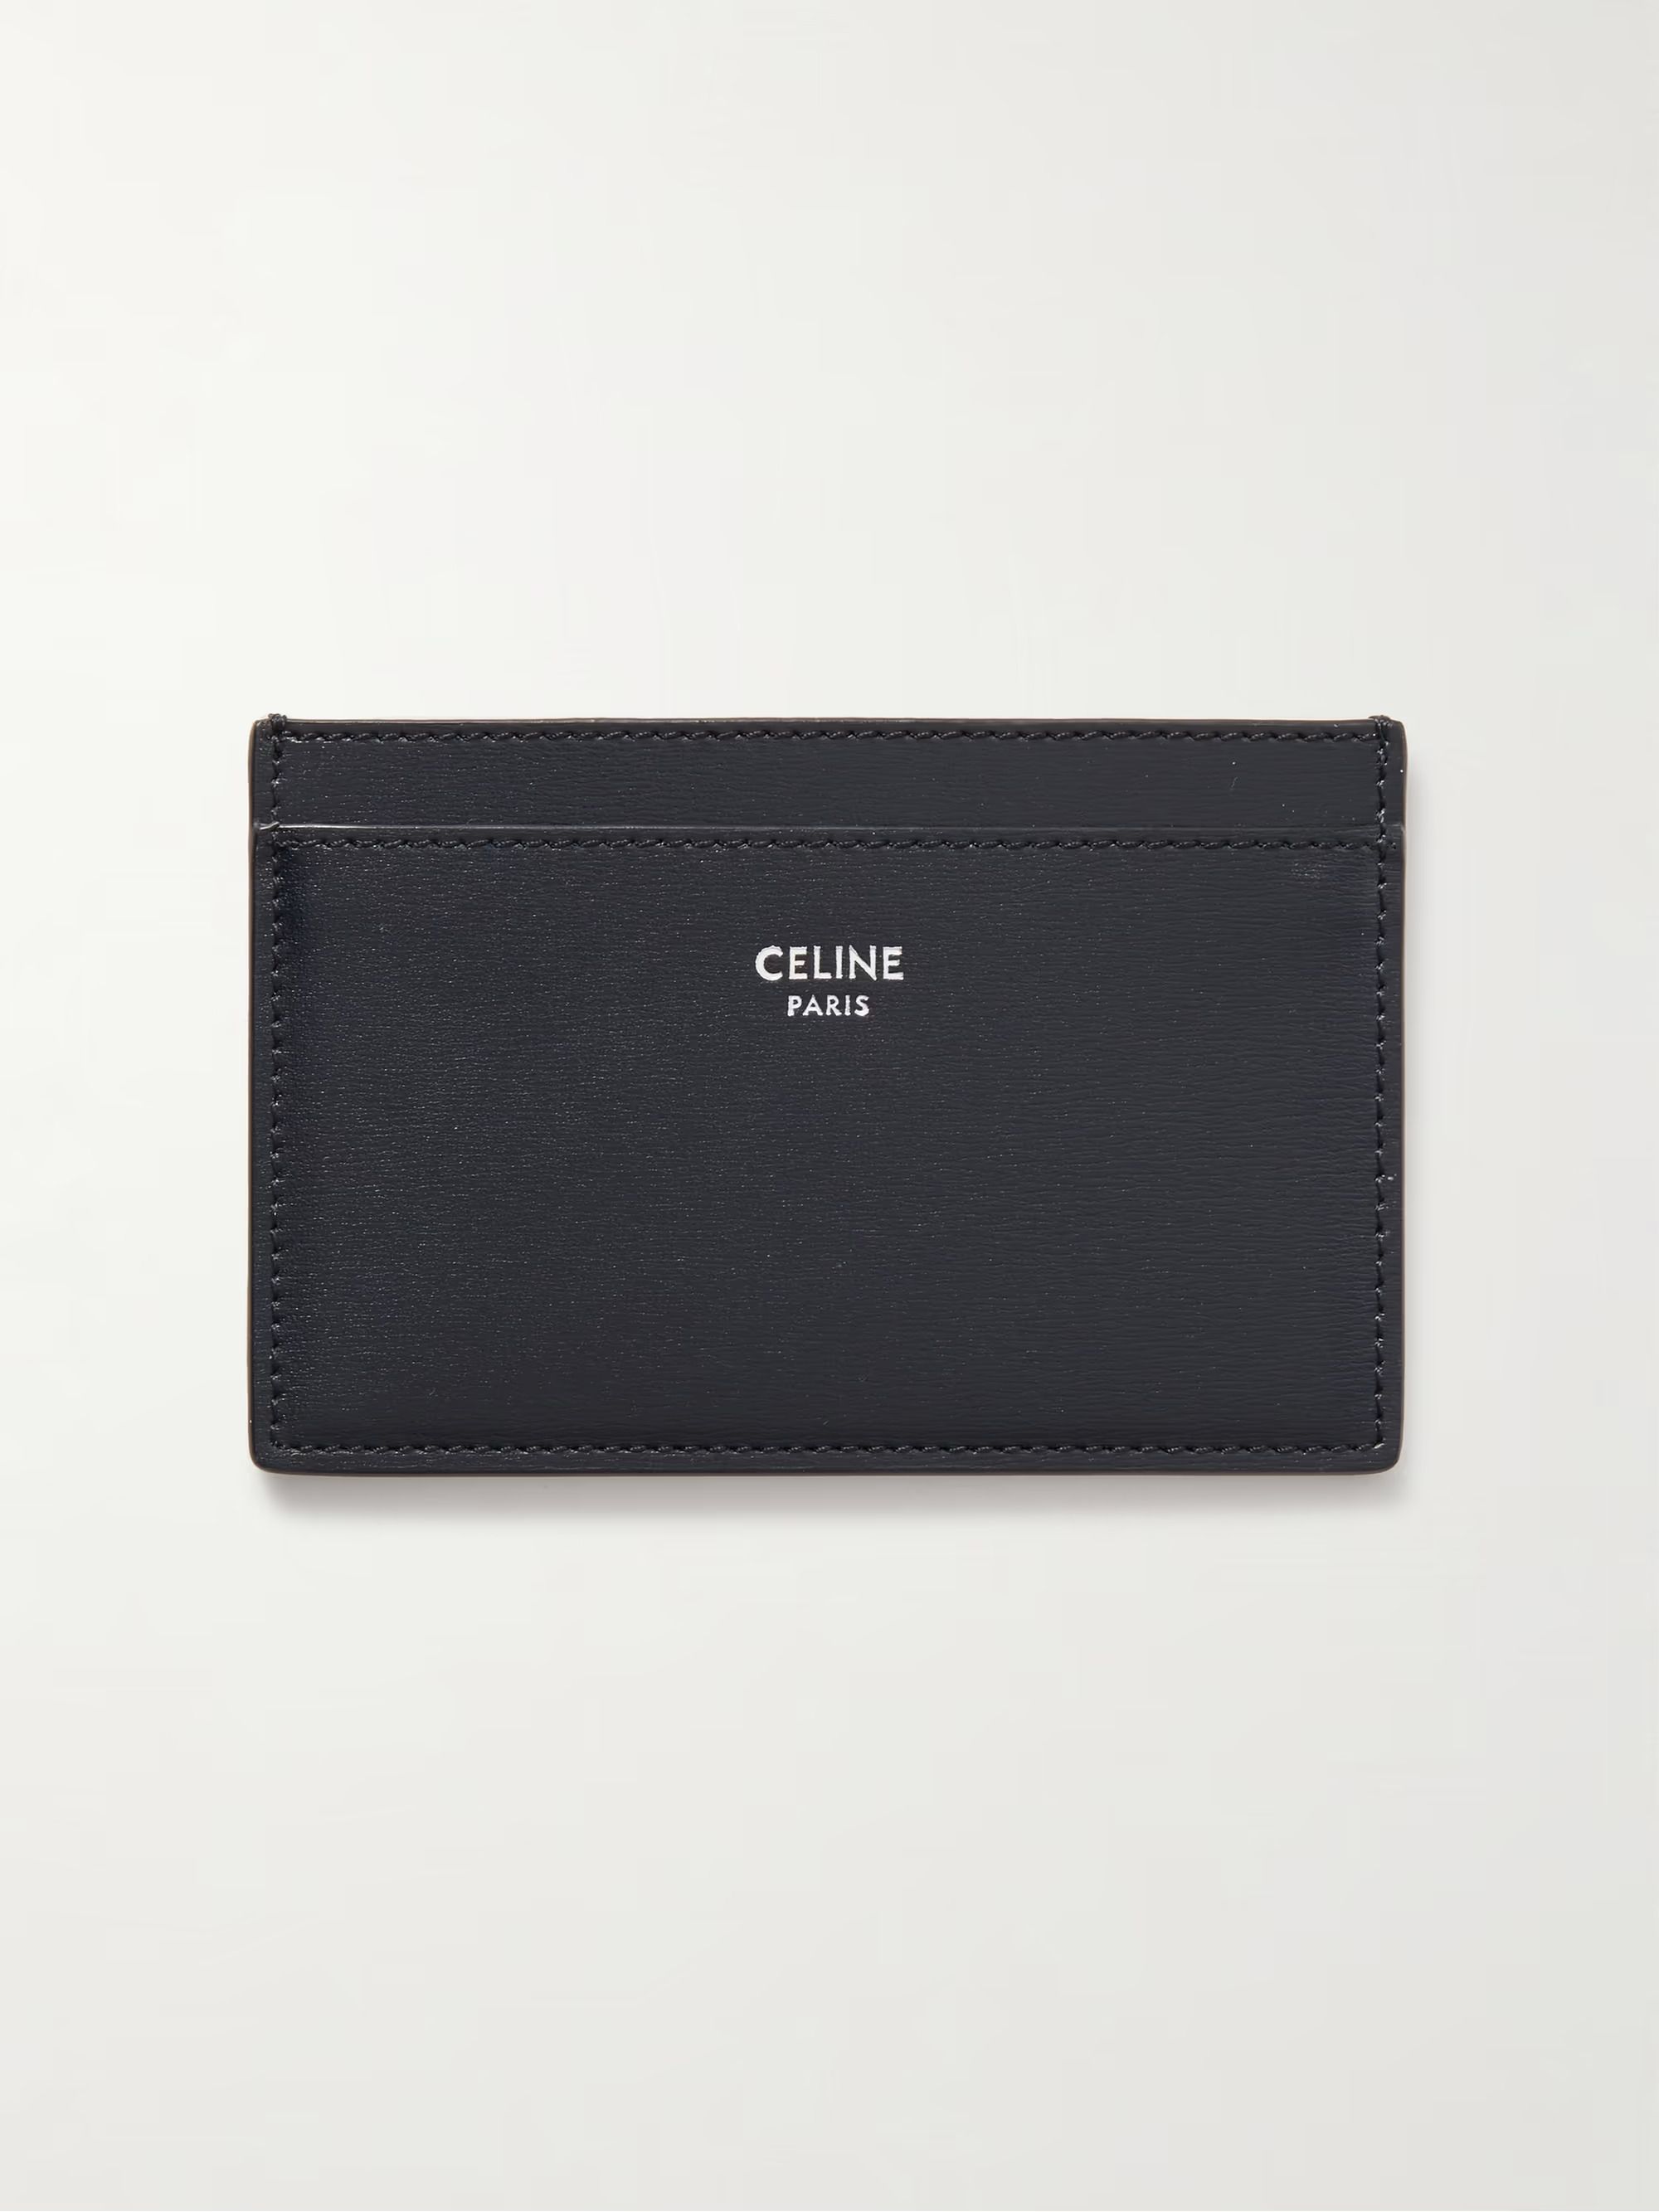 CELINE HOMME Full-Grain Leather Cardholder for Men